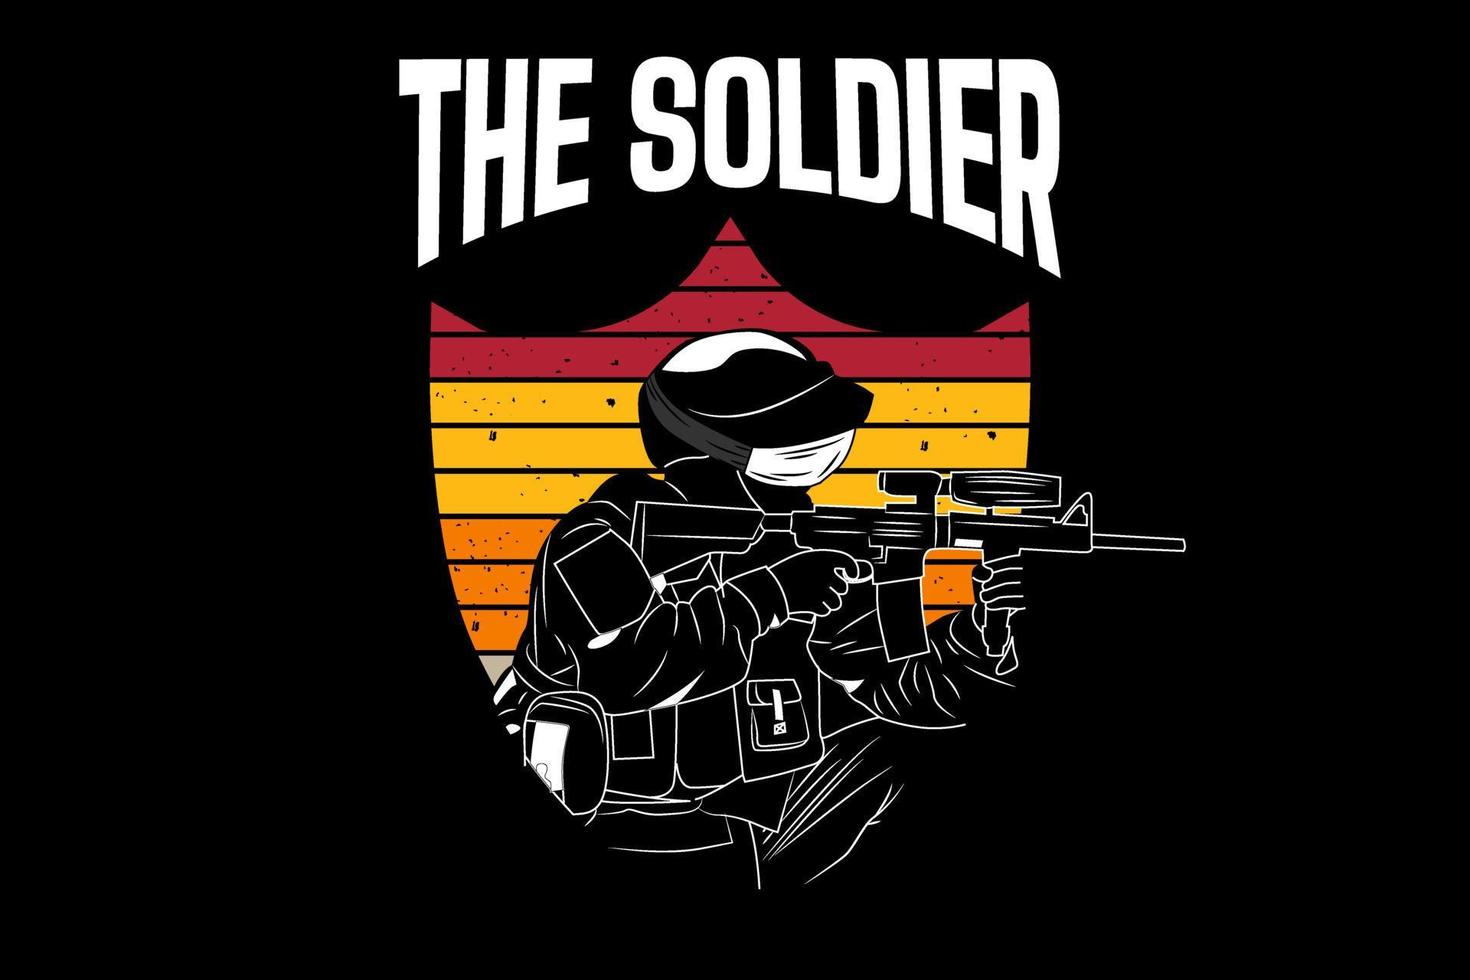 The soldier design vintage retro vector